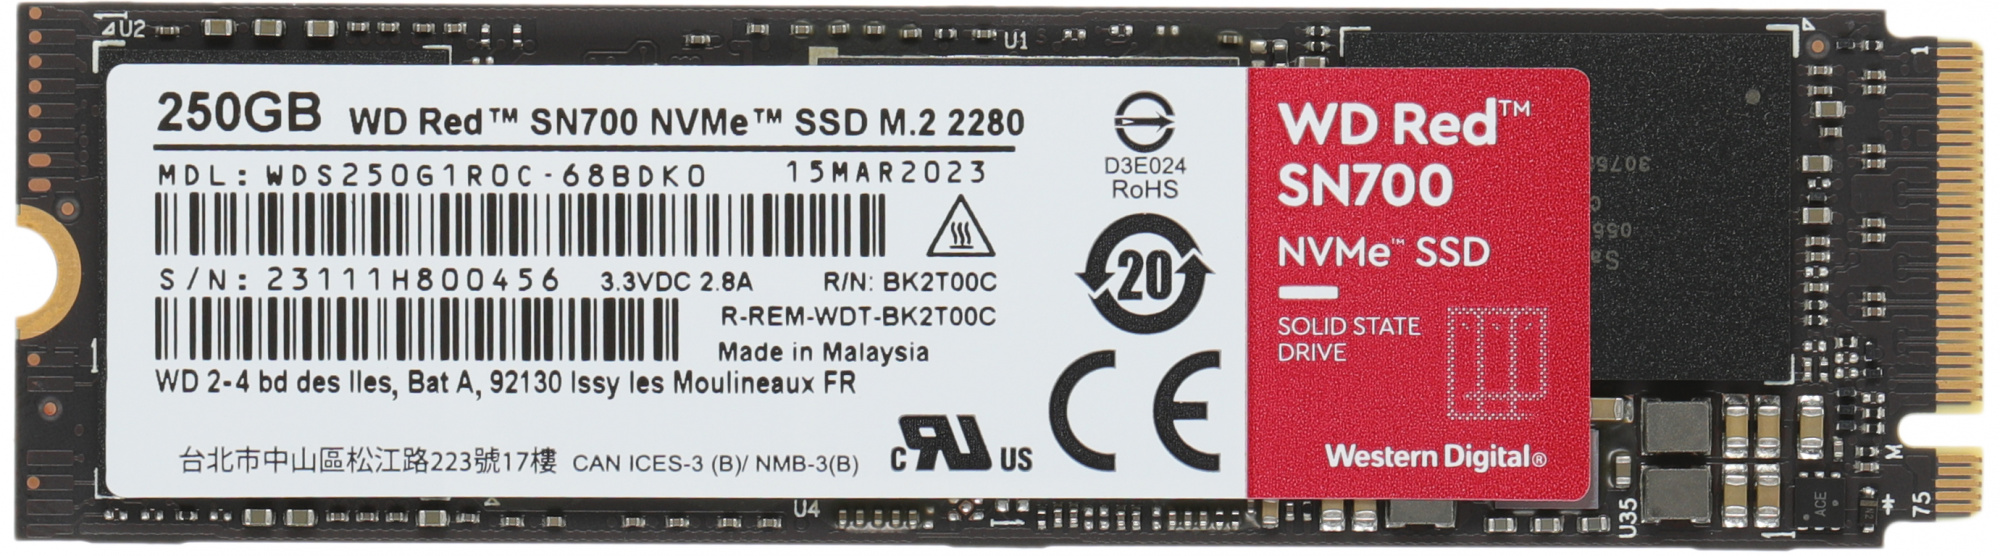 Диск SSD WD Red SN700 M.2 2280 250 ГБ PCIe 3.0 NVMe x4, WDS250G1R0C